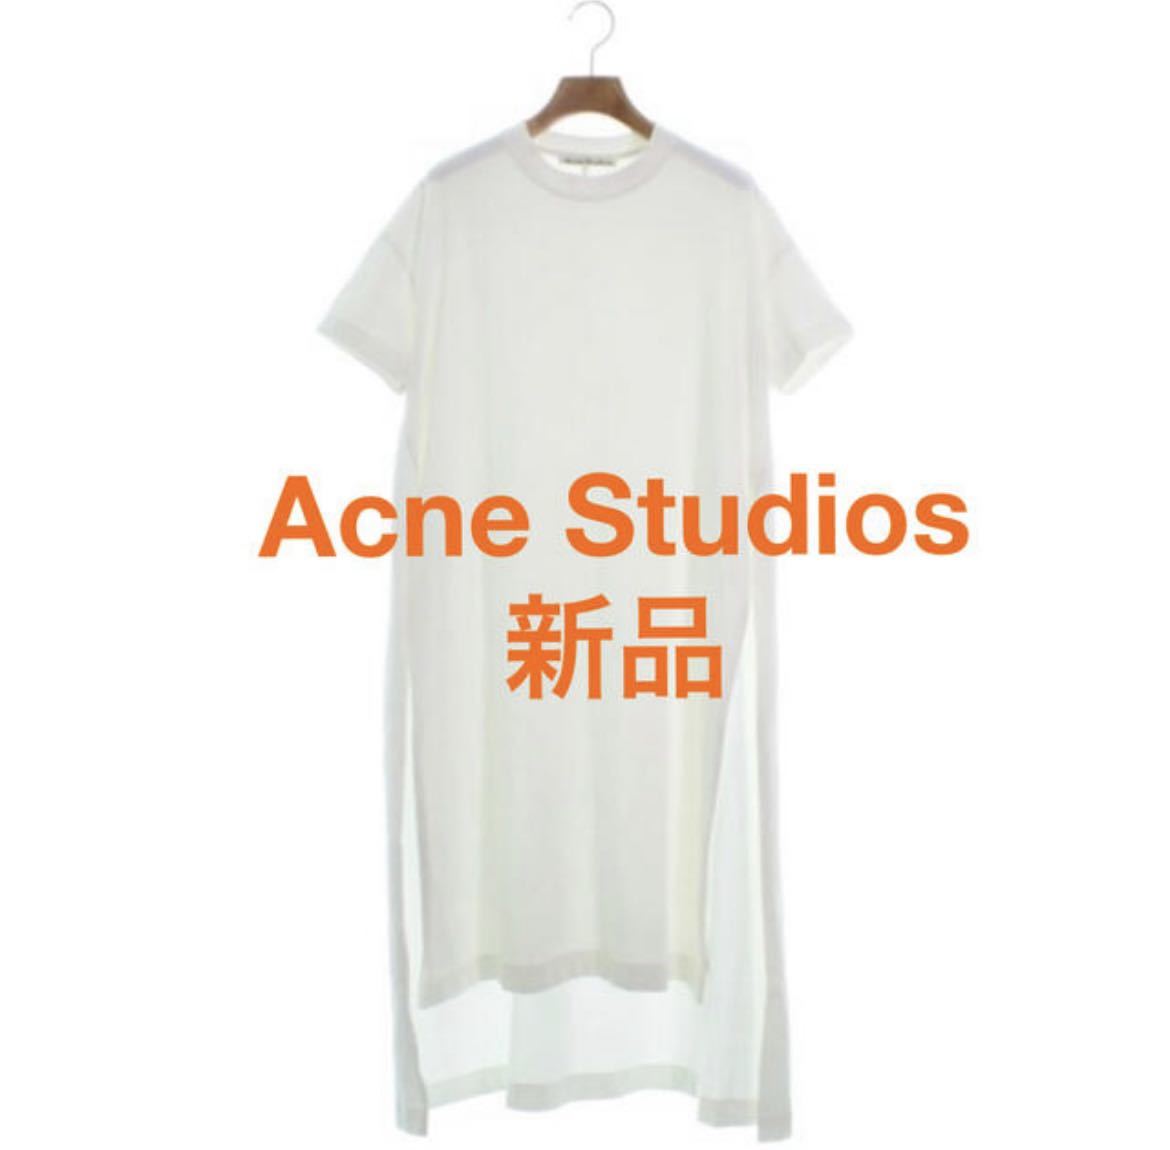 新しい到着 ストゥディオズ アクネ Studios Acne 新品 Patri XS ホワイト ロングワンピース スリット Tシャツ Hvy 女性用